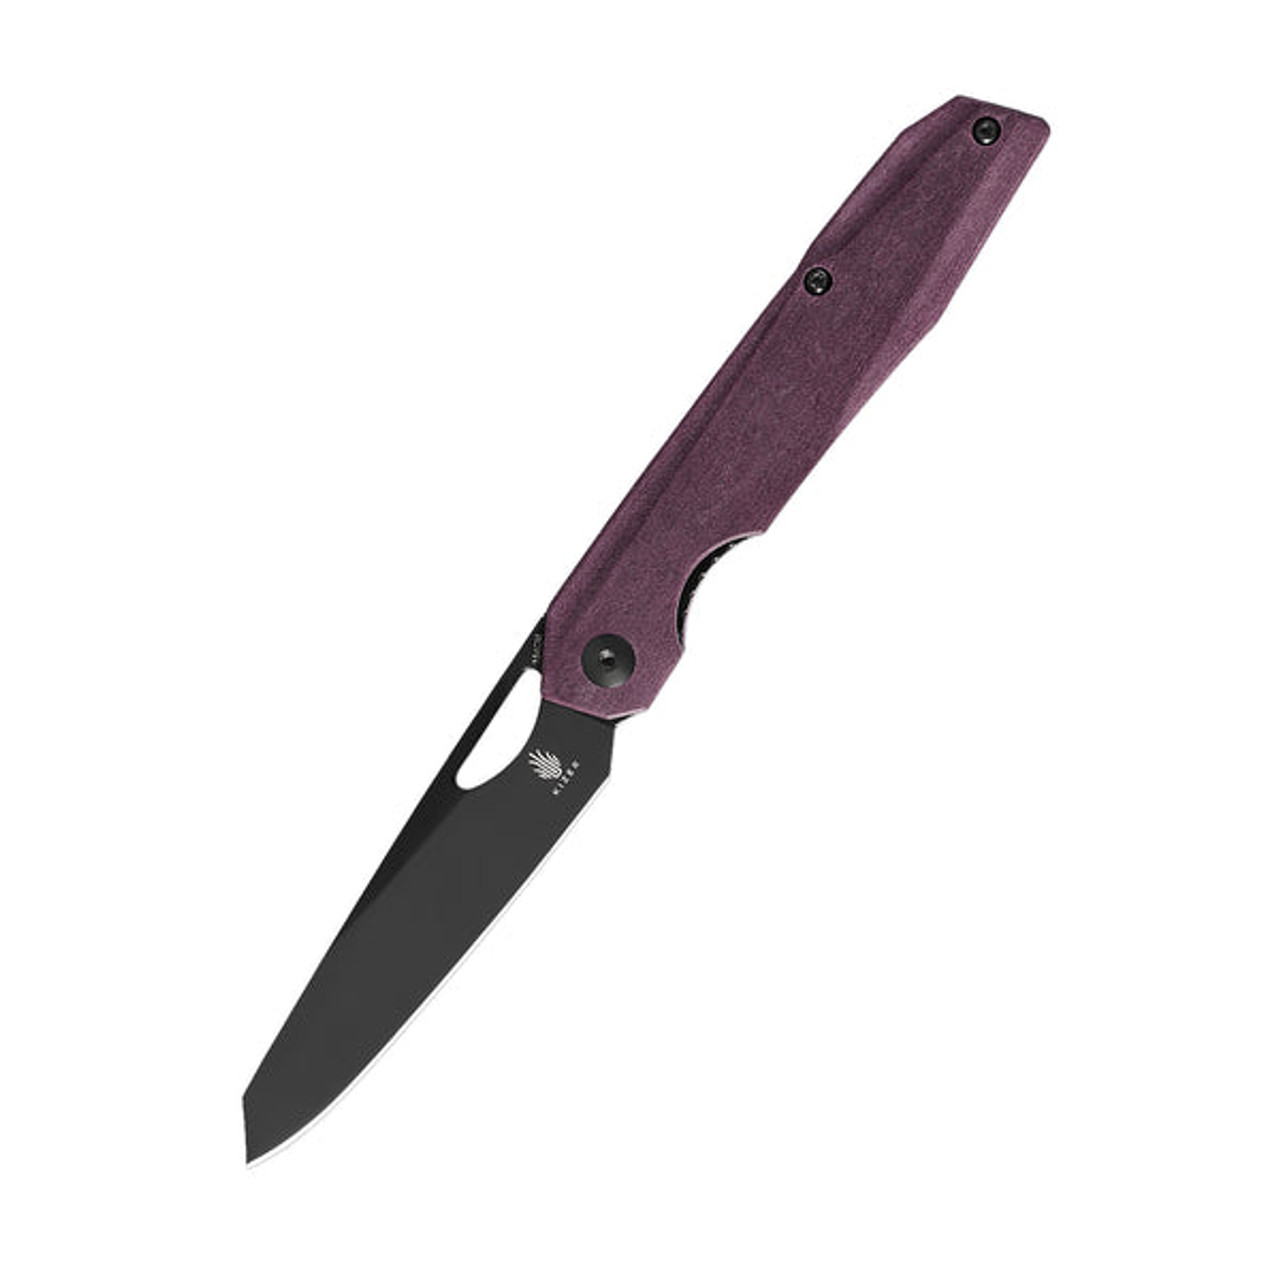 Kizer Genie Folding Knife (V4545C2) 3.40 in Black 154CM, Red RichLite Handle